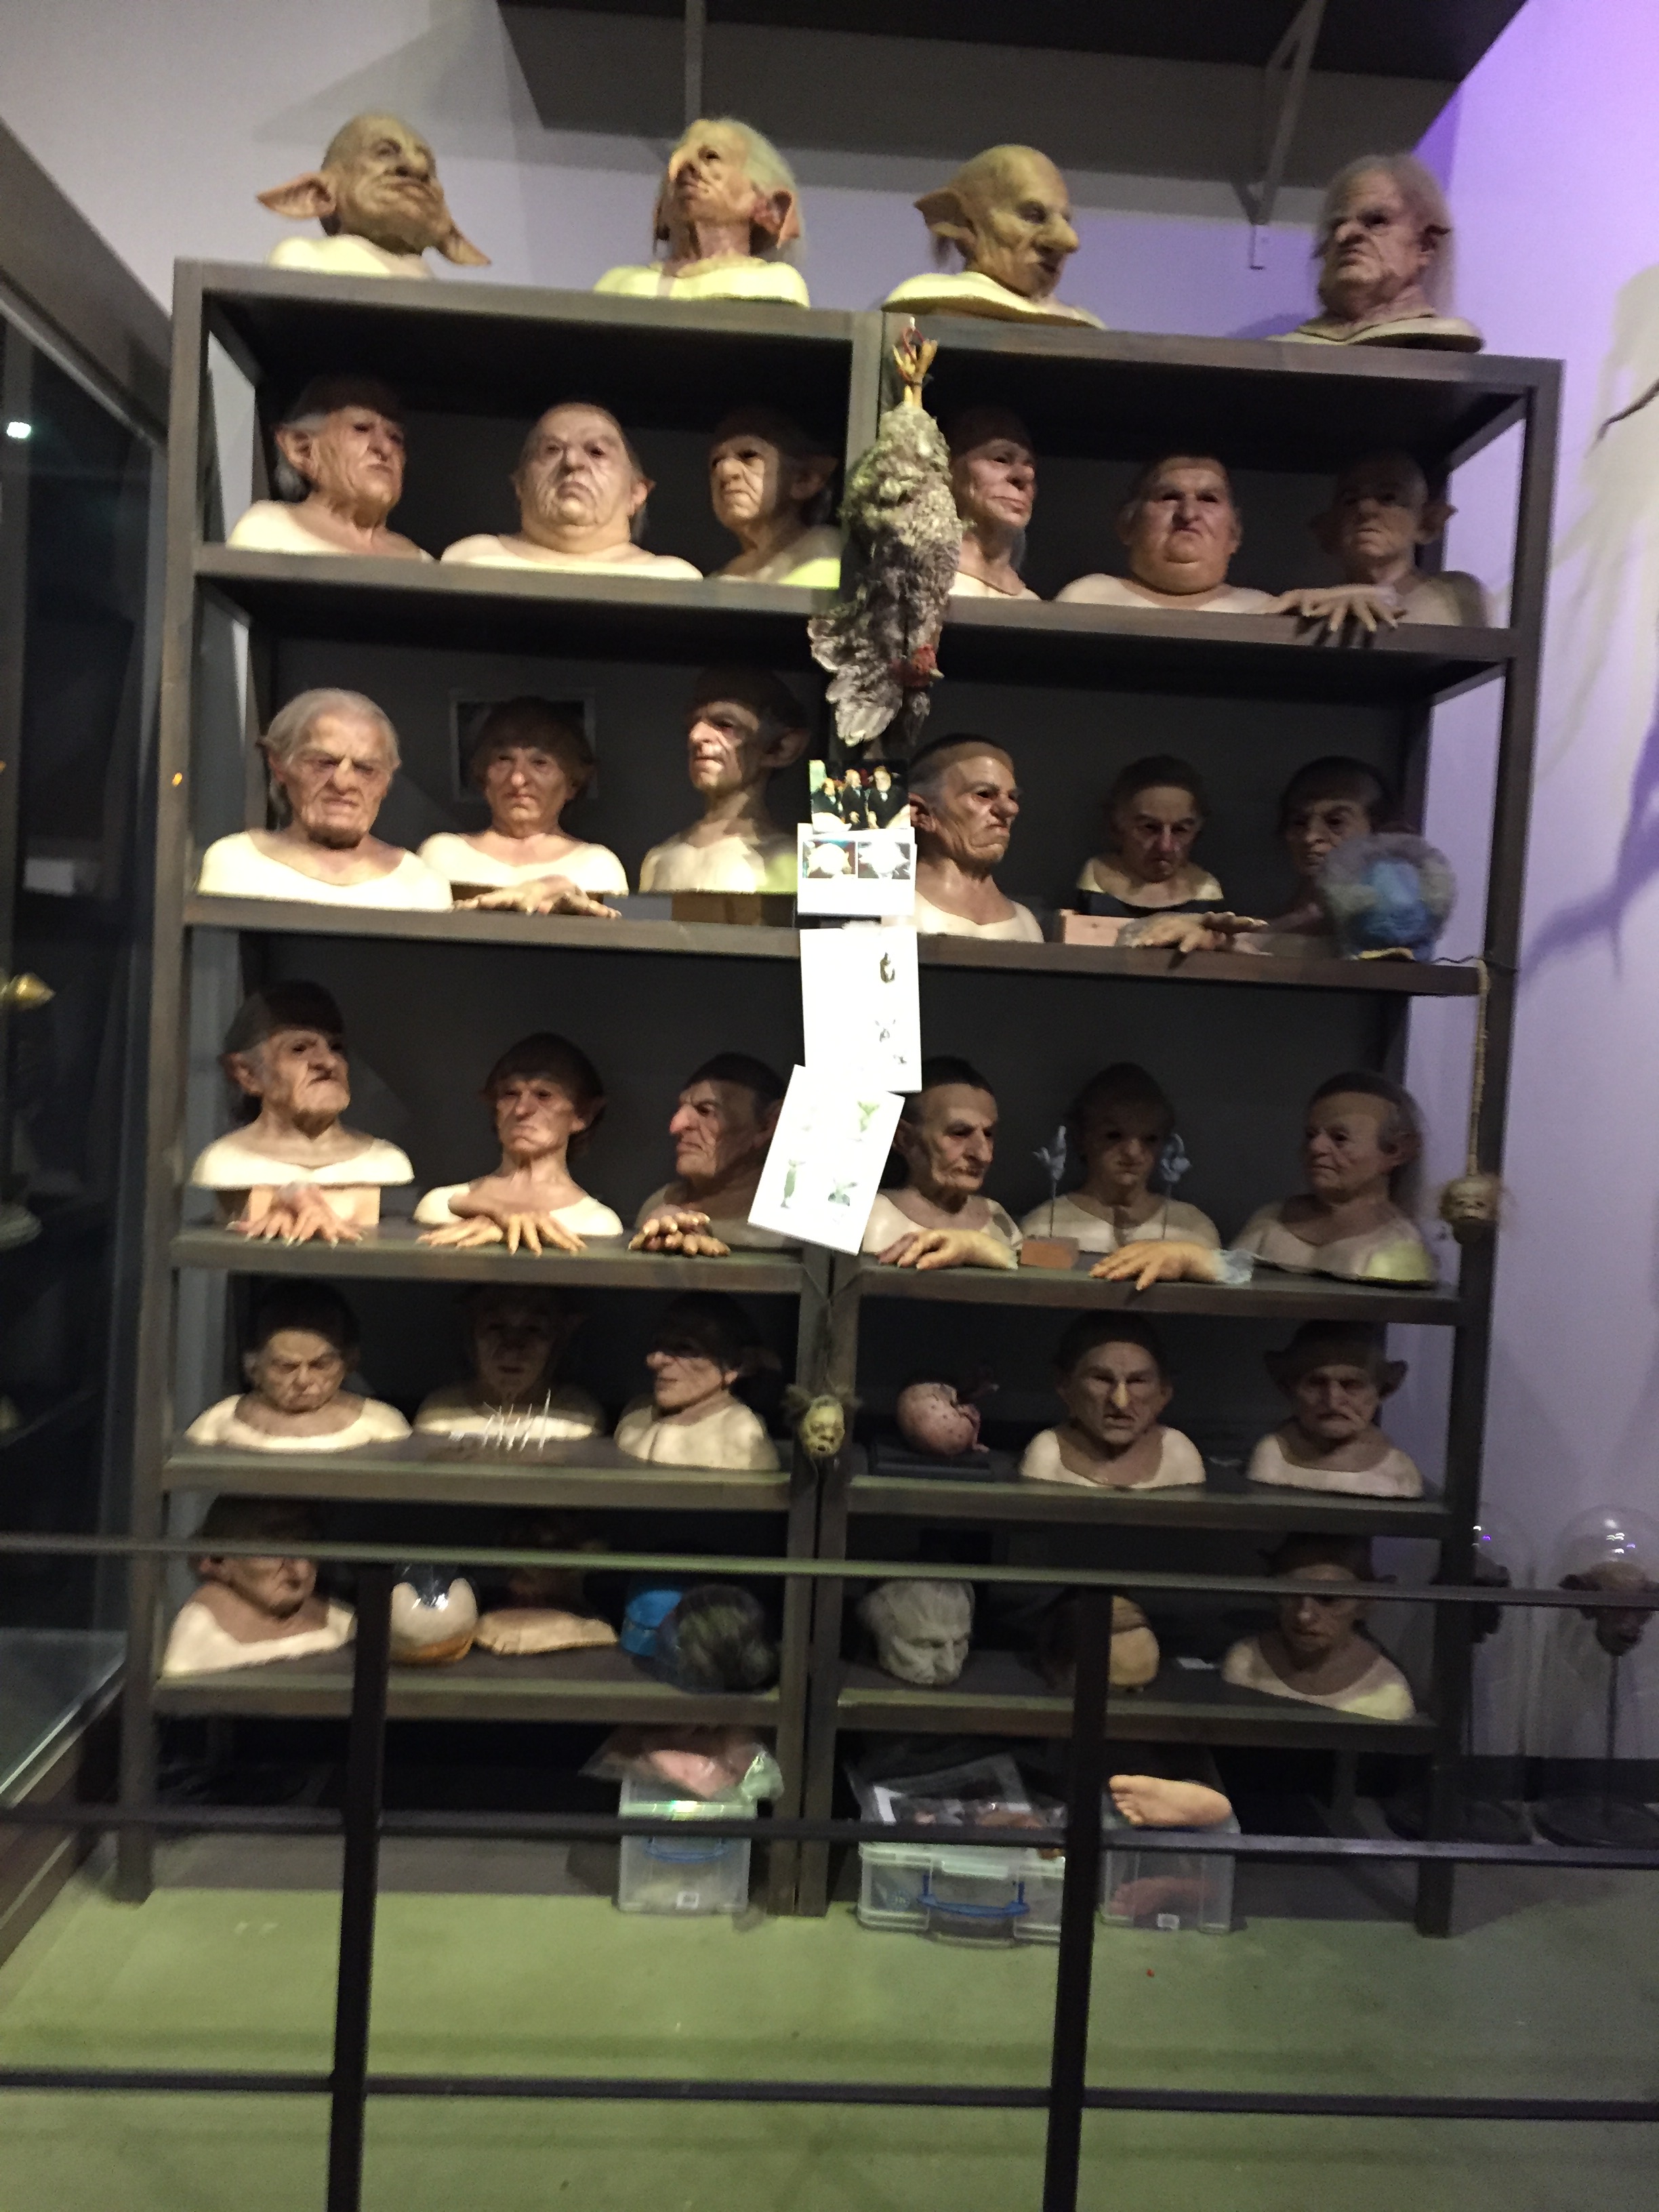 Shelves full of prosthetic model heads.